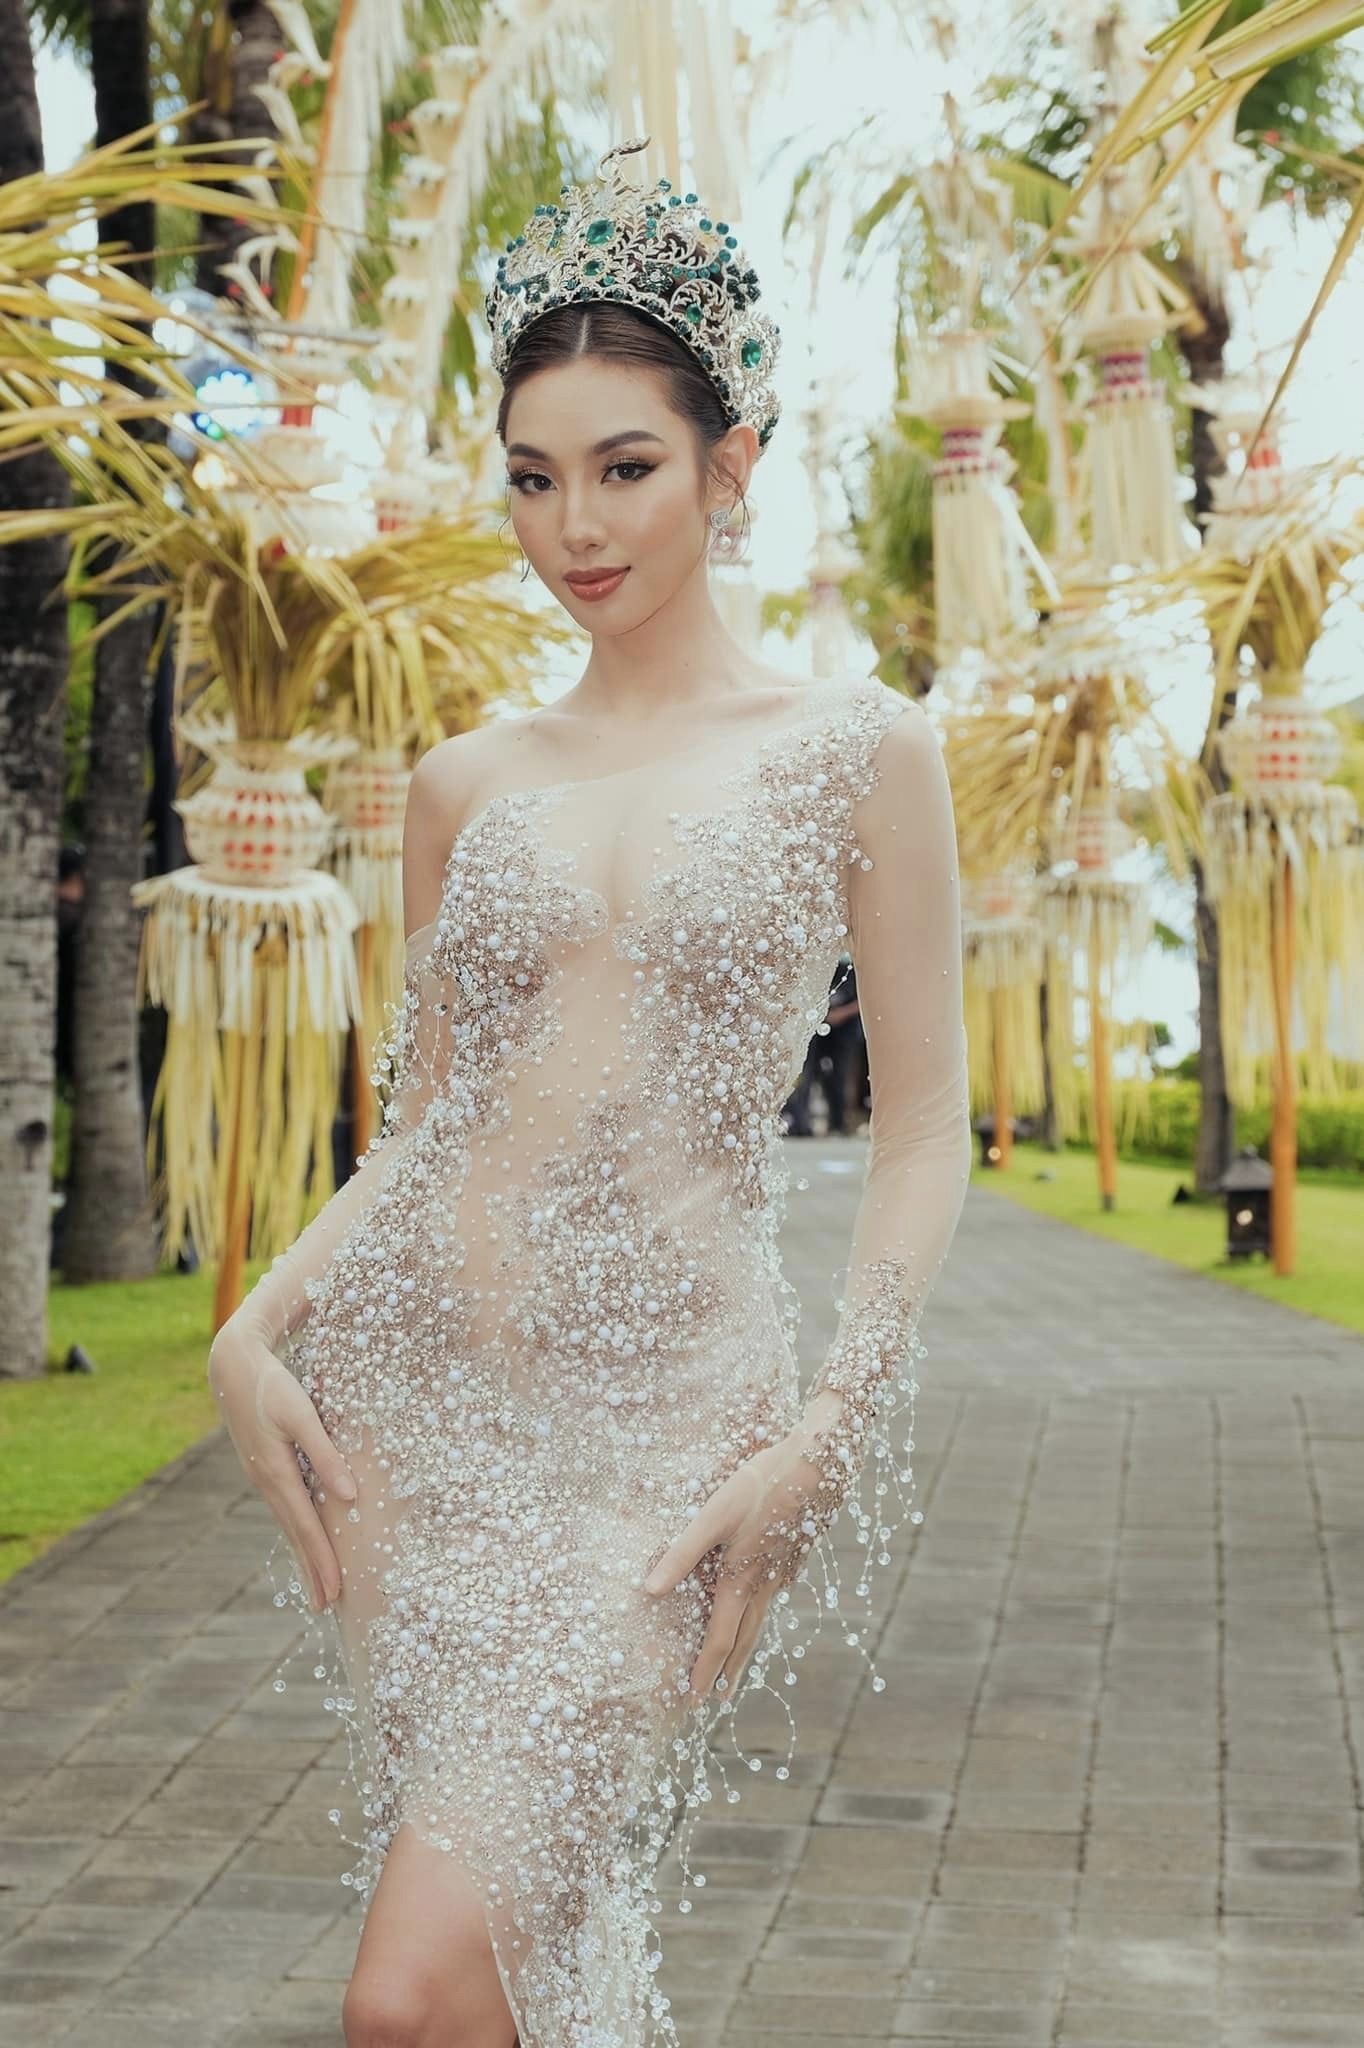 Đoàn Thiên Ân có vượt qua cái bóng lớn của Hoa hậu Thùy Tiên tại chung kết Miss Grand International 2022? - Ảnh 3.